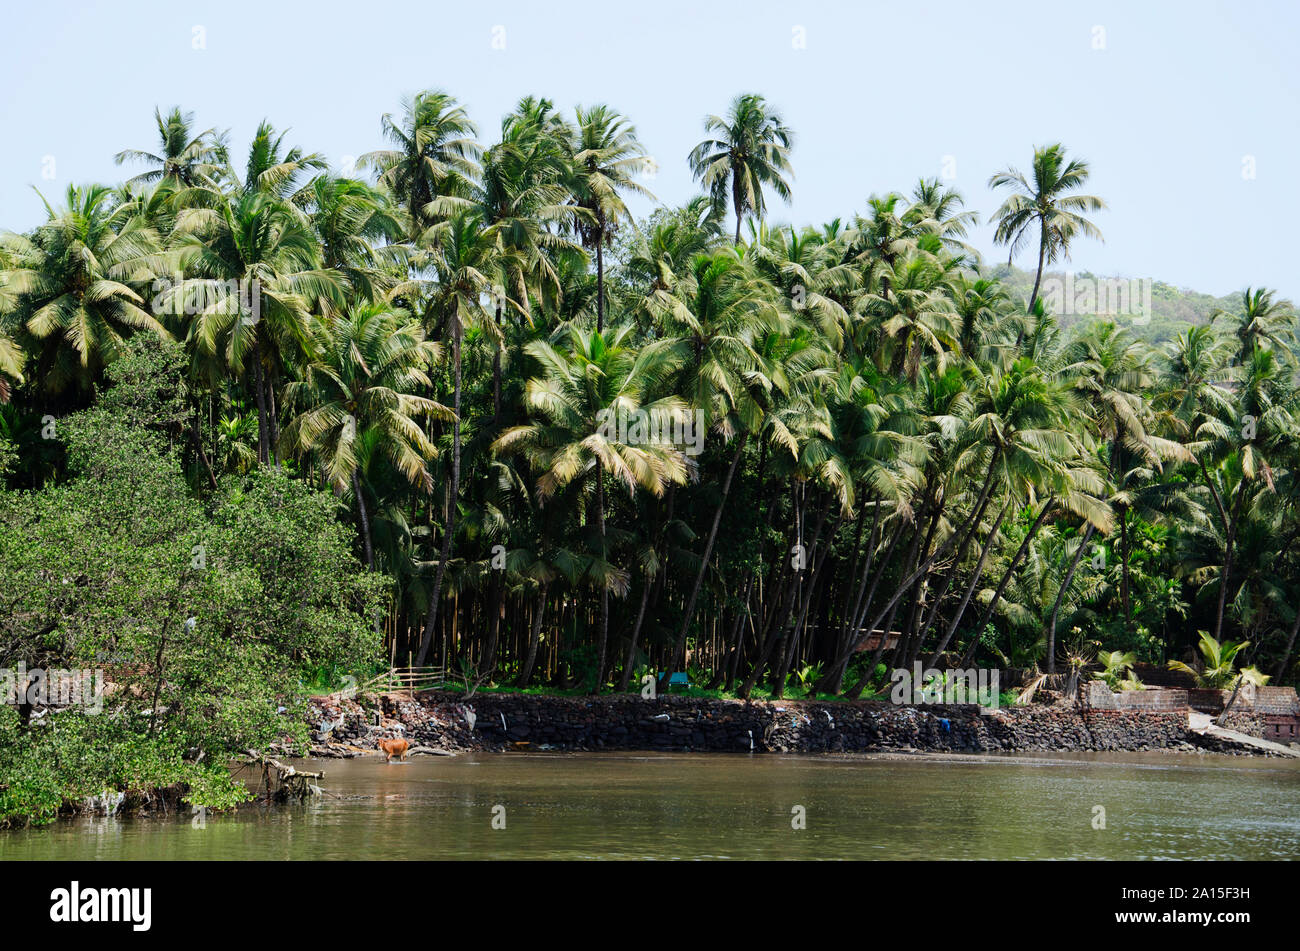 Coconut trees in Konkan area near Dabhol jetty, Maharashtra, India Stock Photo